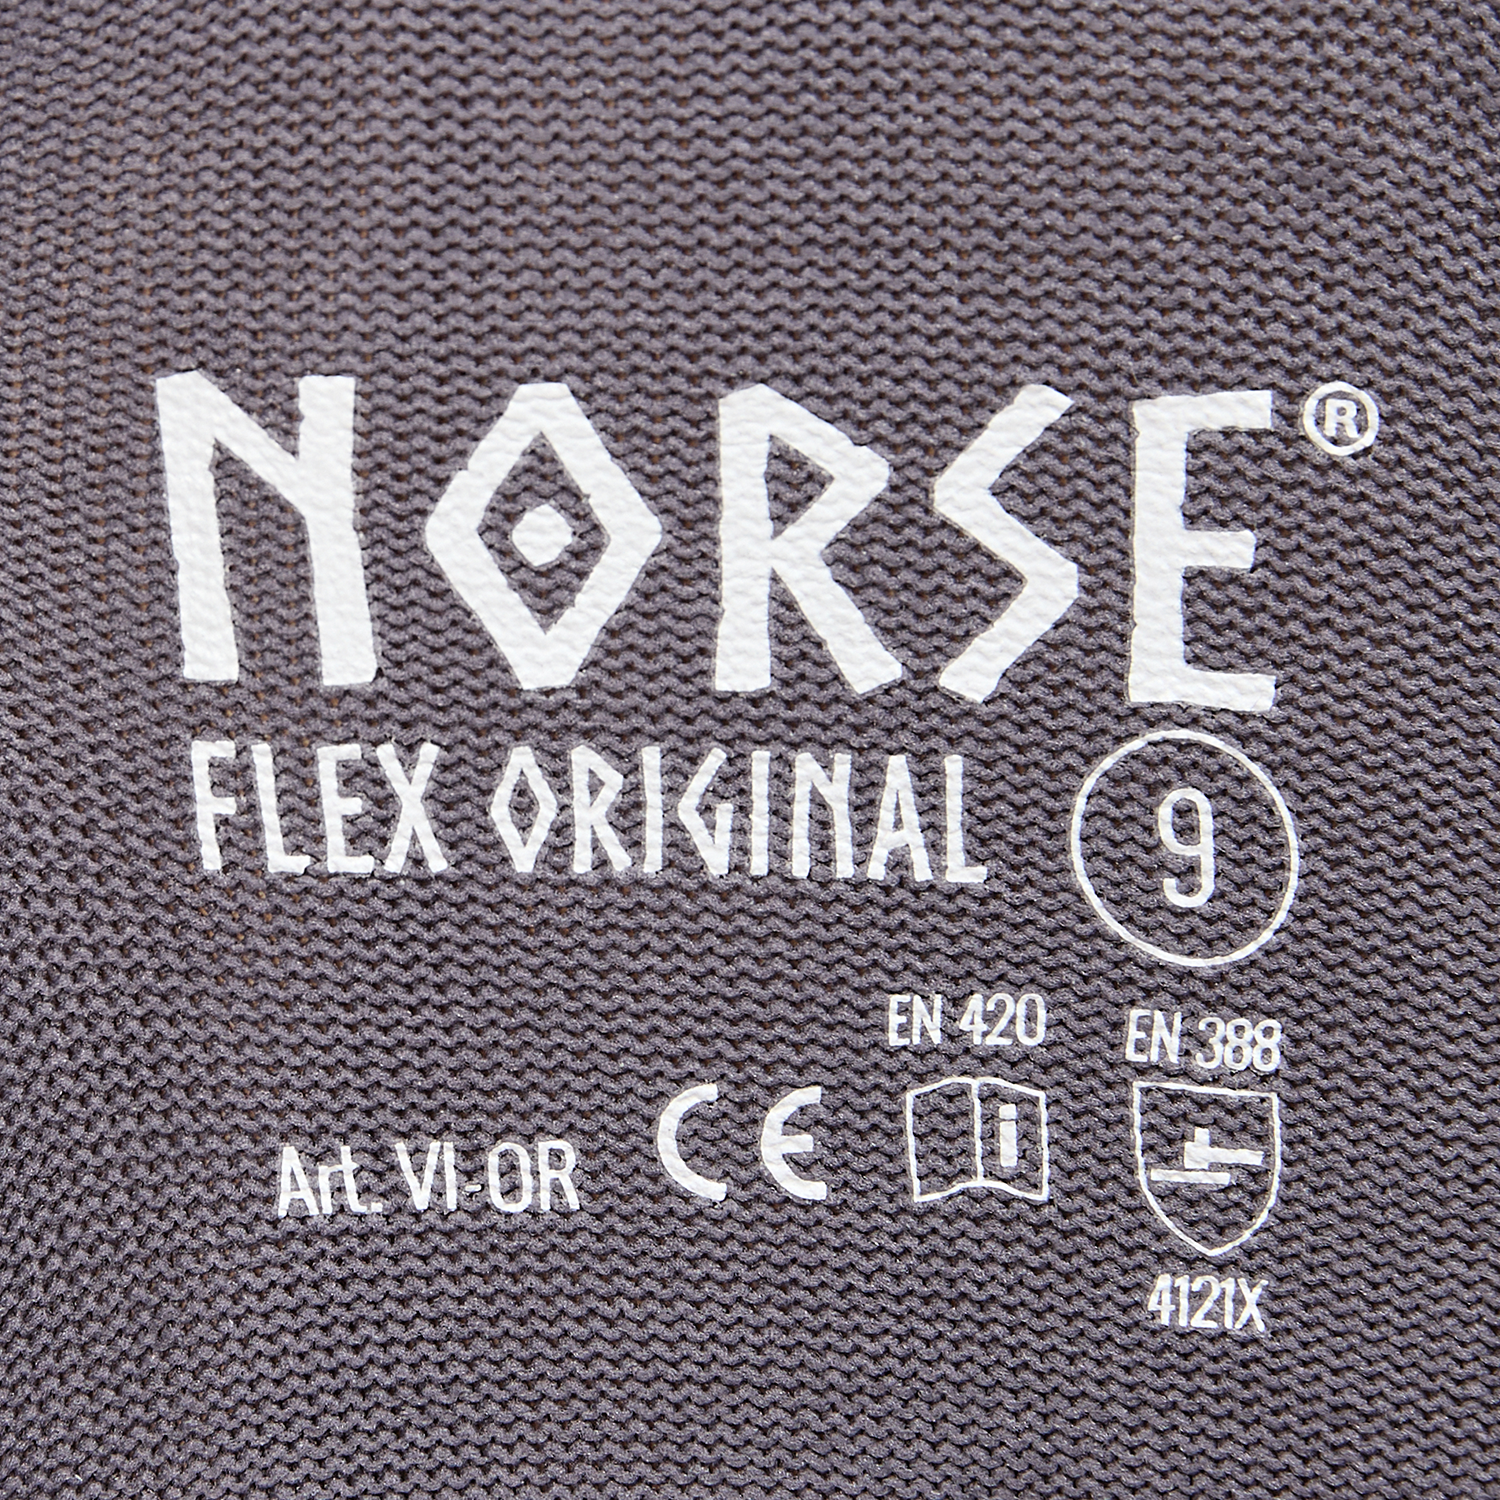 Guantes de montaje NORSE Flex Original talla 10